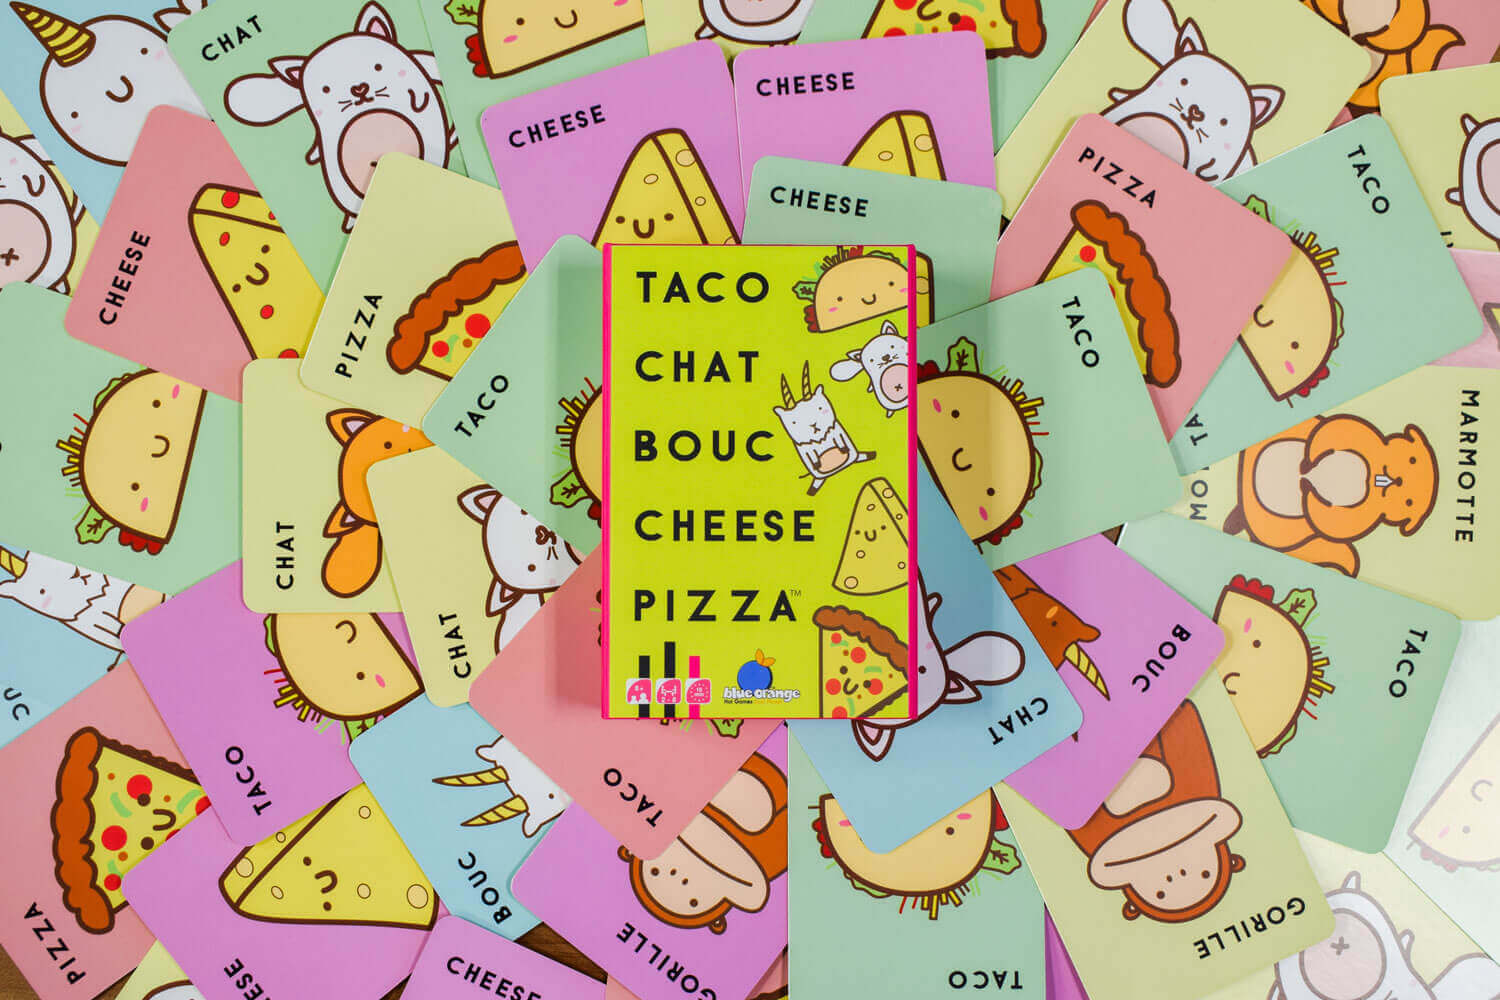 JEU DE CARTES Taco, chat, bouc, cheese, pizza